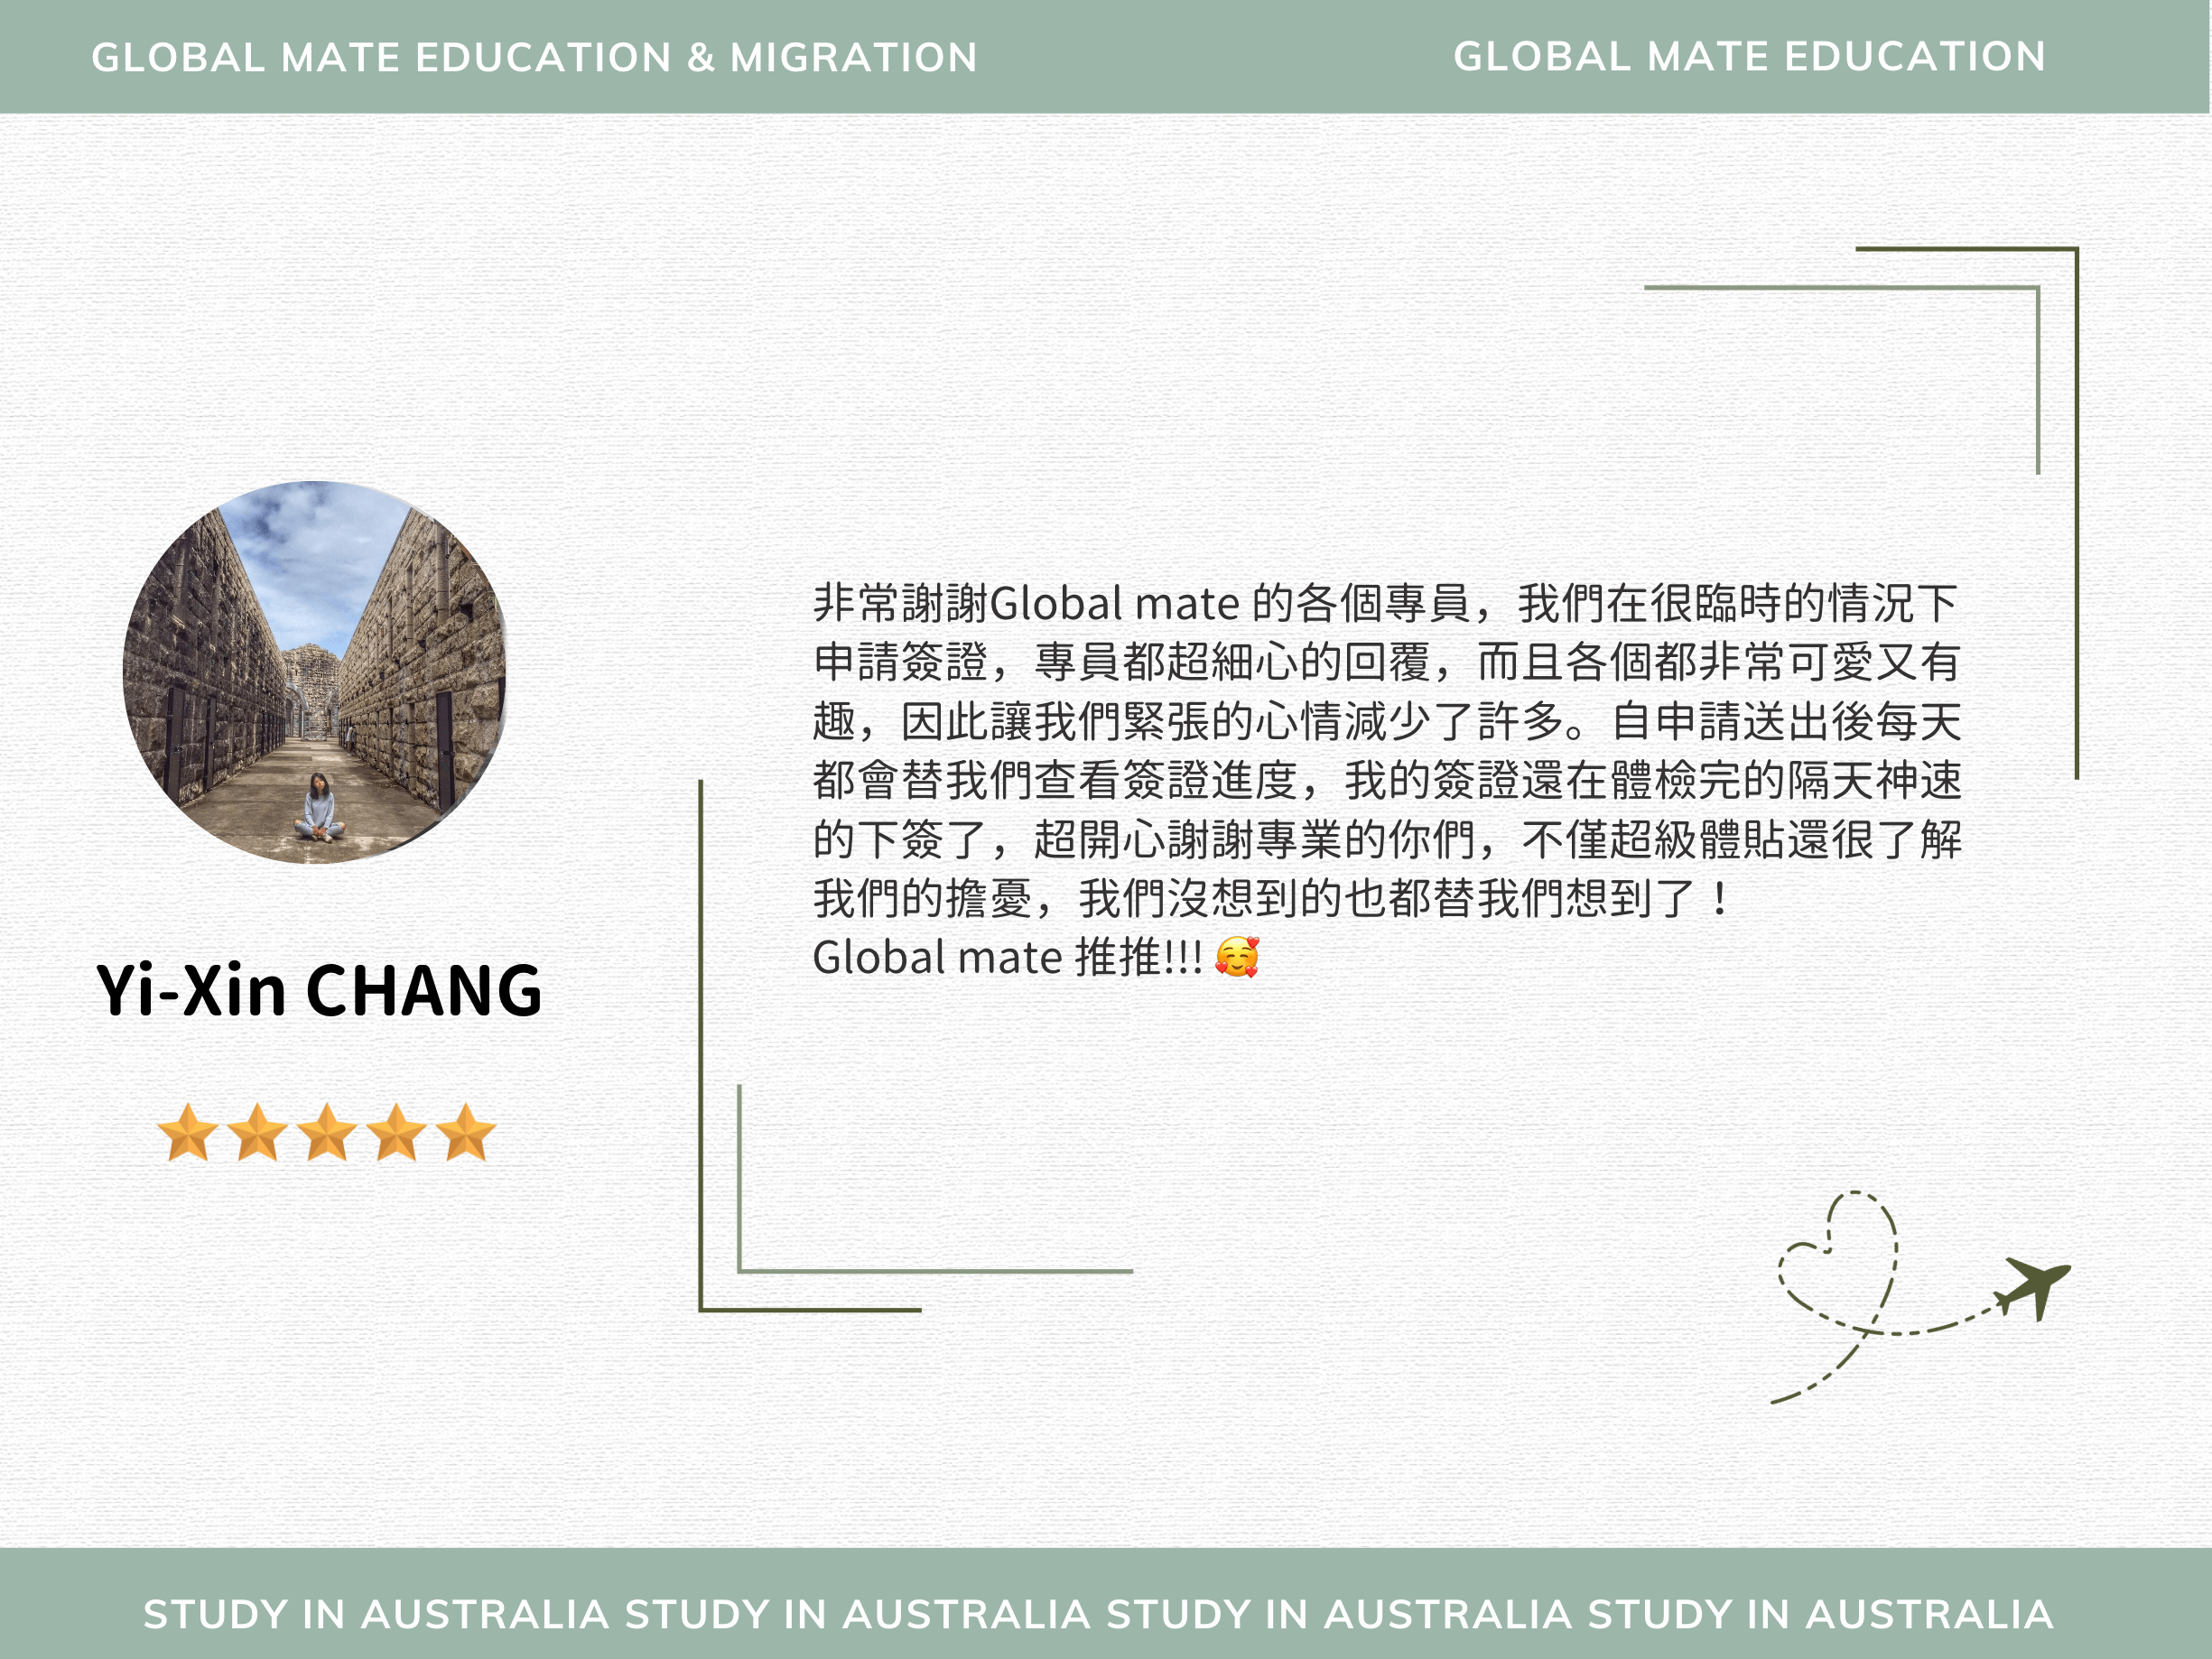 Yi-Xin CHANG